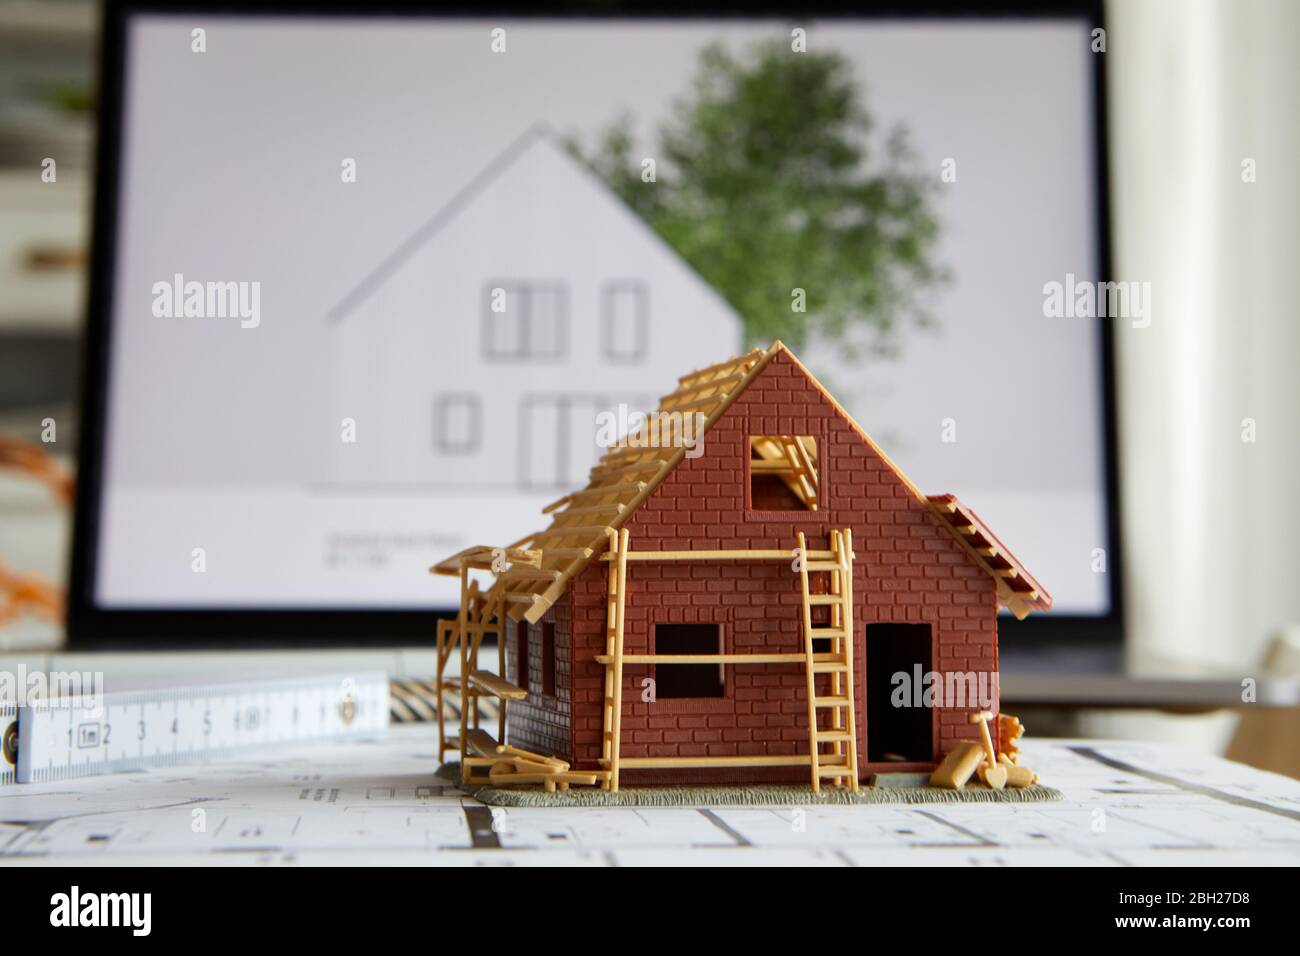 Architettura, modello di proprietà domestica su piano di costruzione, laptop in background Foto Stock